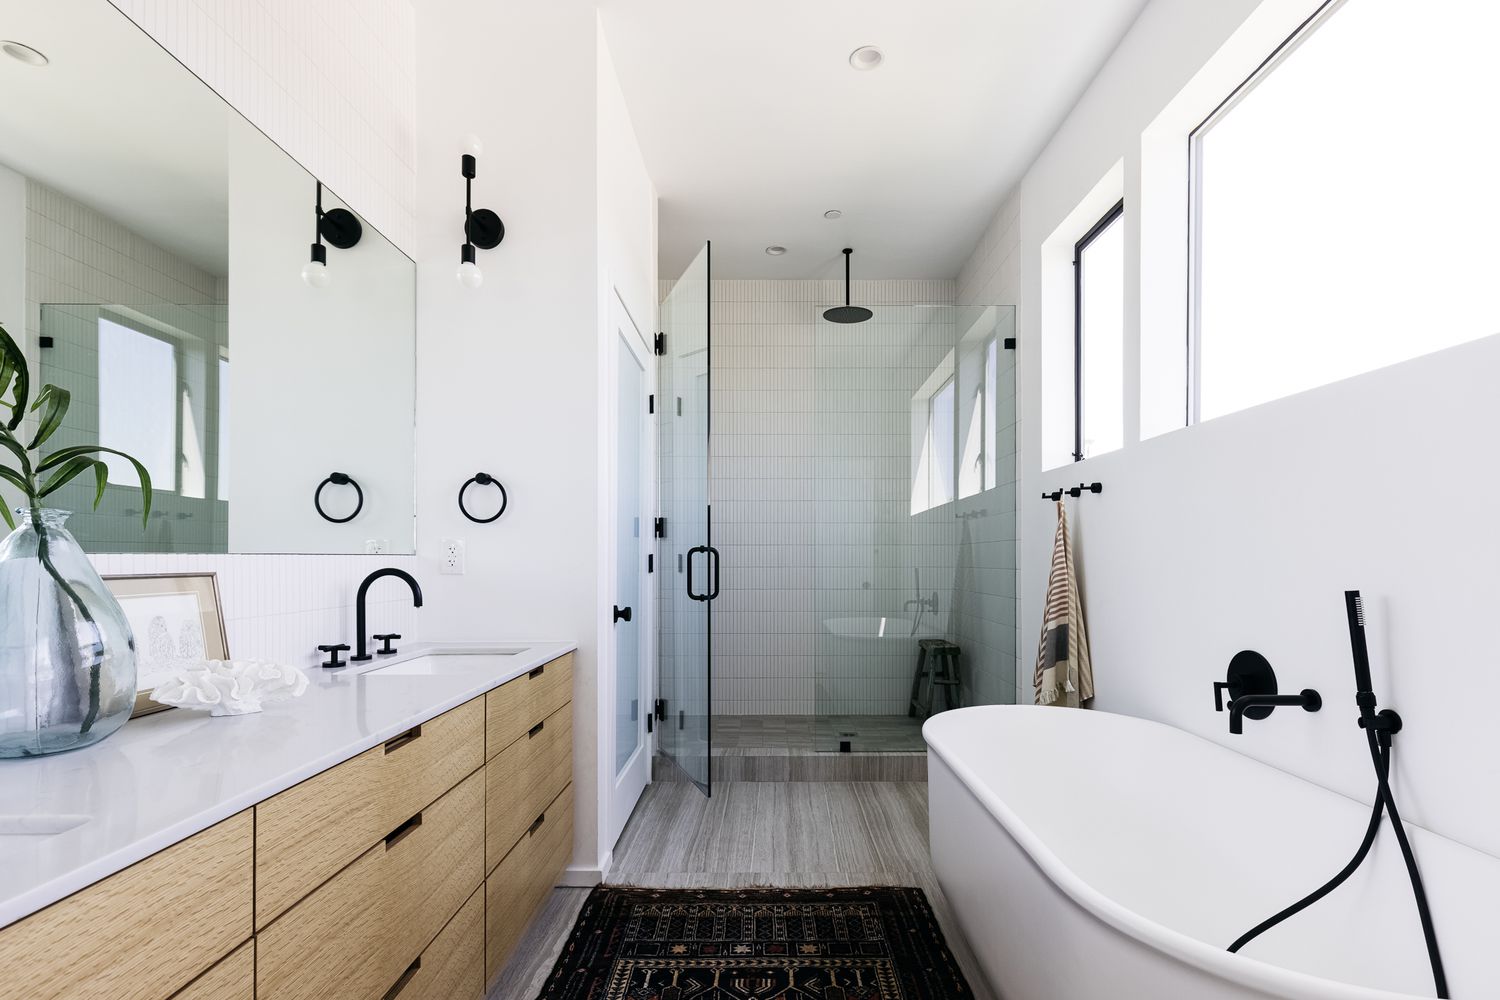 Modernes Bad mit freistehender Wanne, bodengleicher Dusche, hellen Fenstern und großem Spiegel